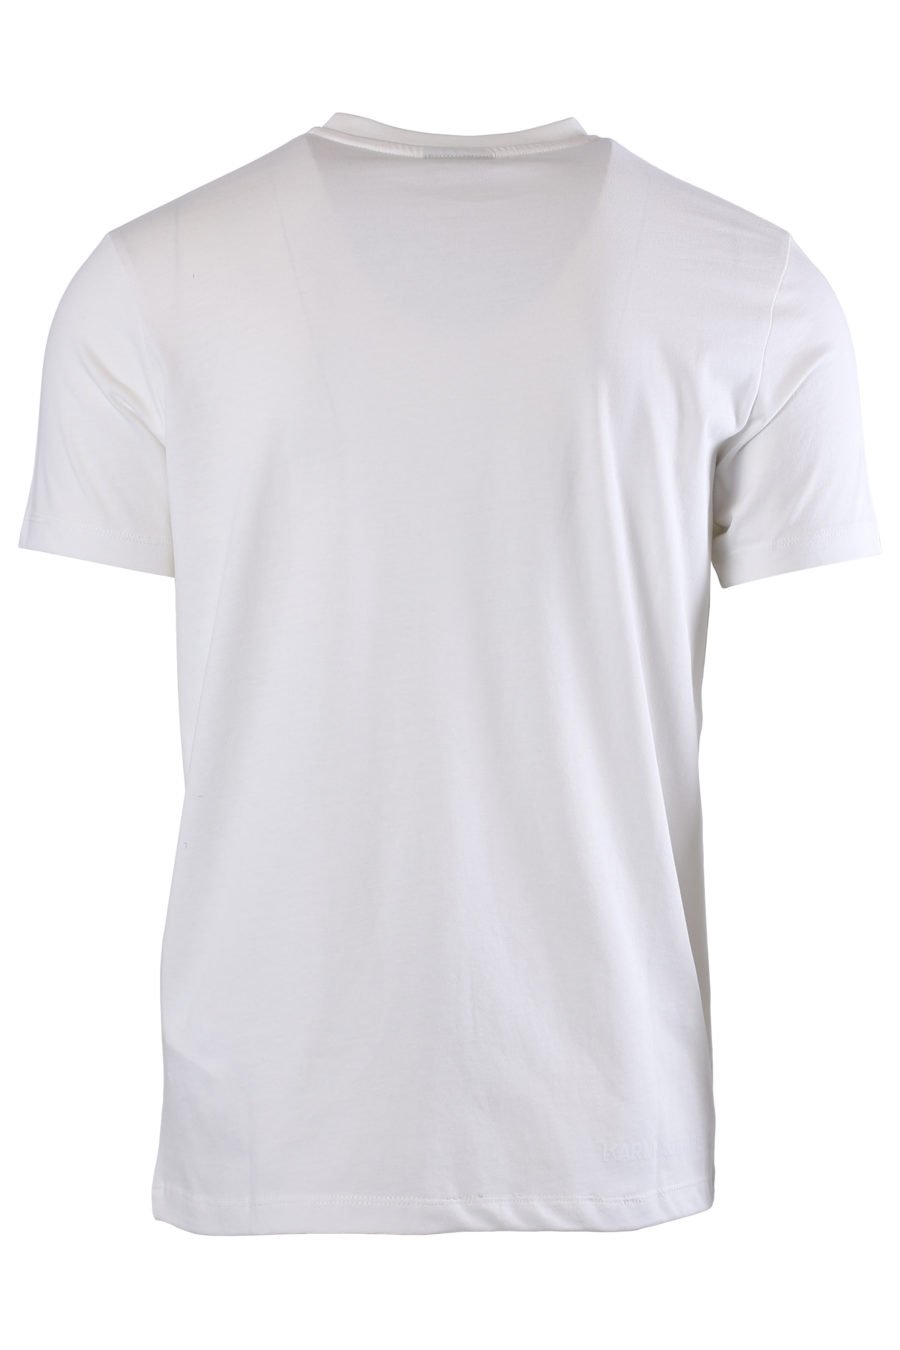 Camiseta blanca con logotipo lateral en relieve - IMG 0585